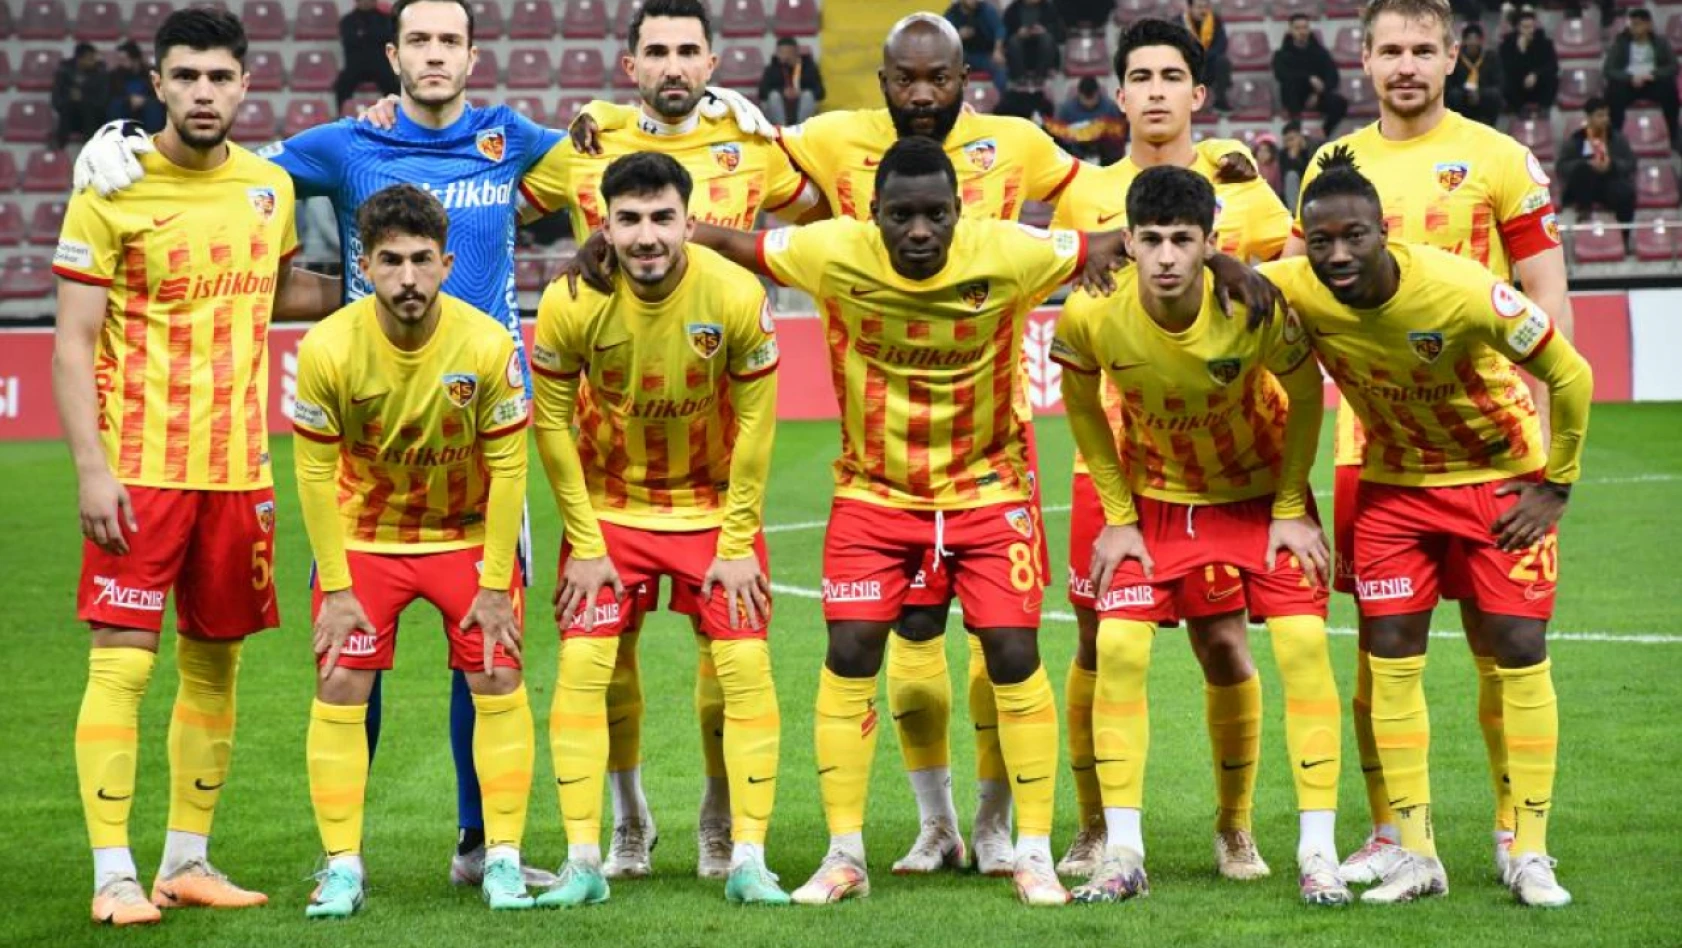 Kayserispor kendi sahasında Vanspor'u 4-0 mağlup etti